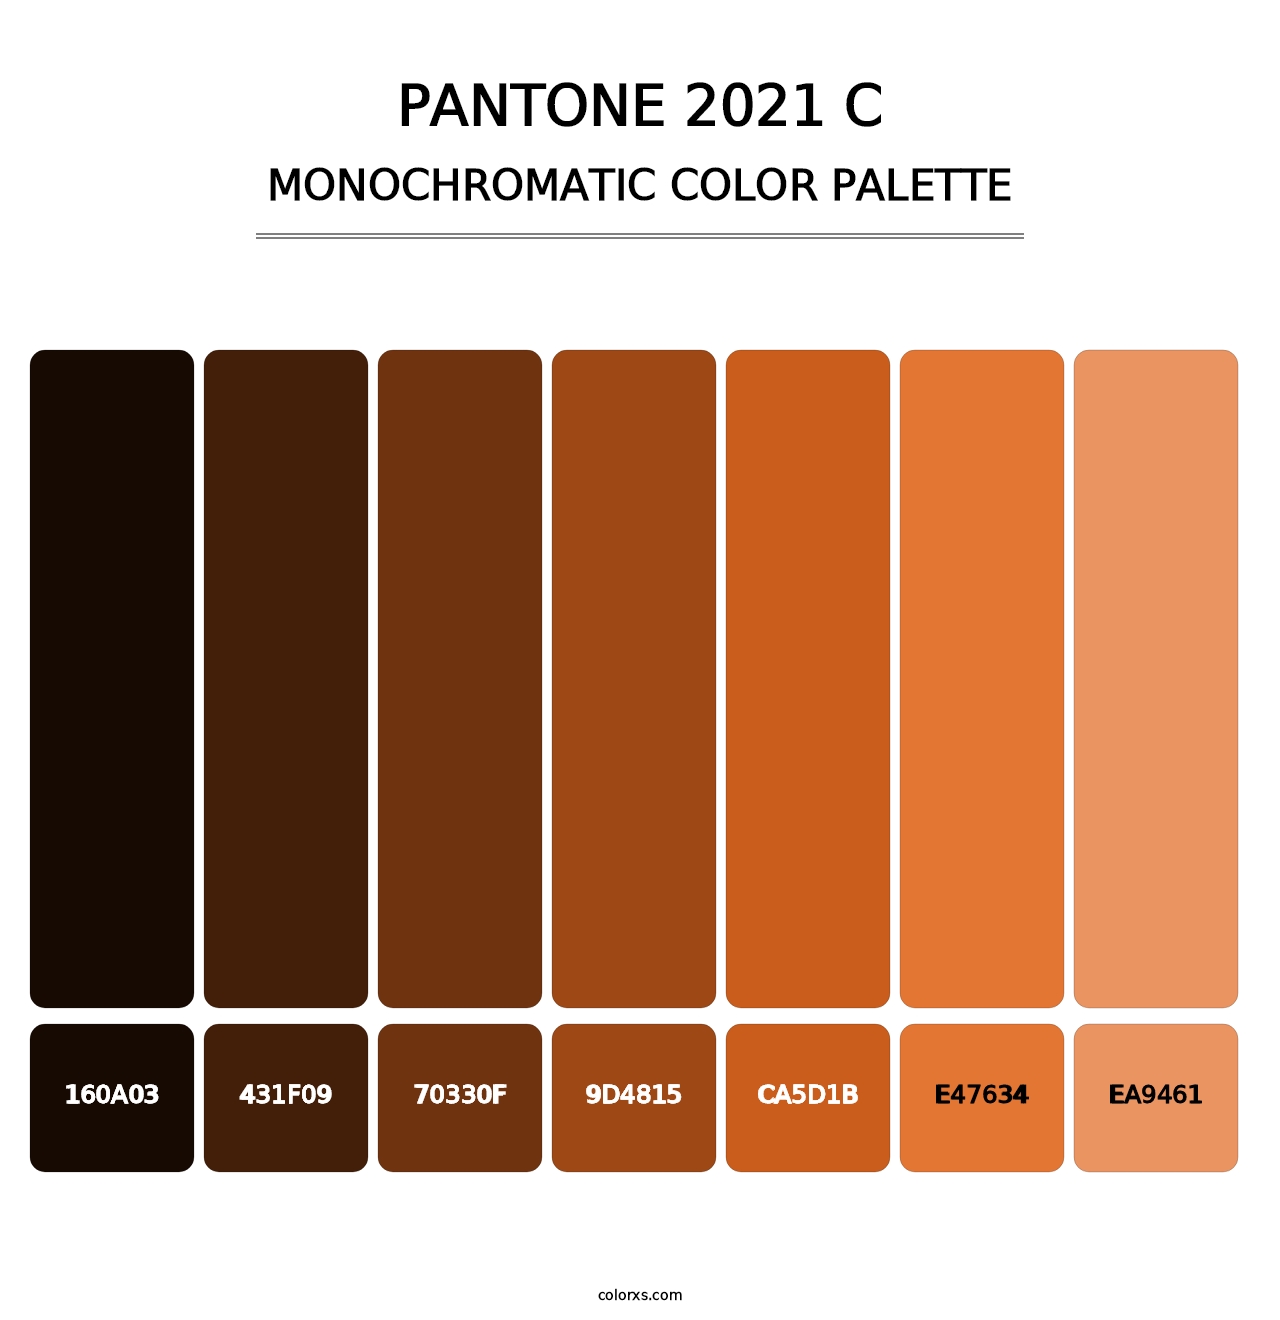 PANTONE 2021 C - Monochromatic Color Palette